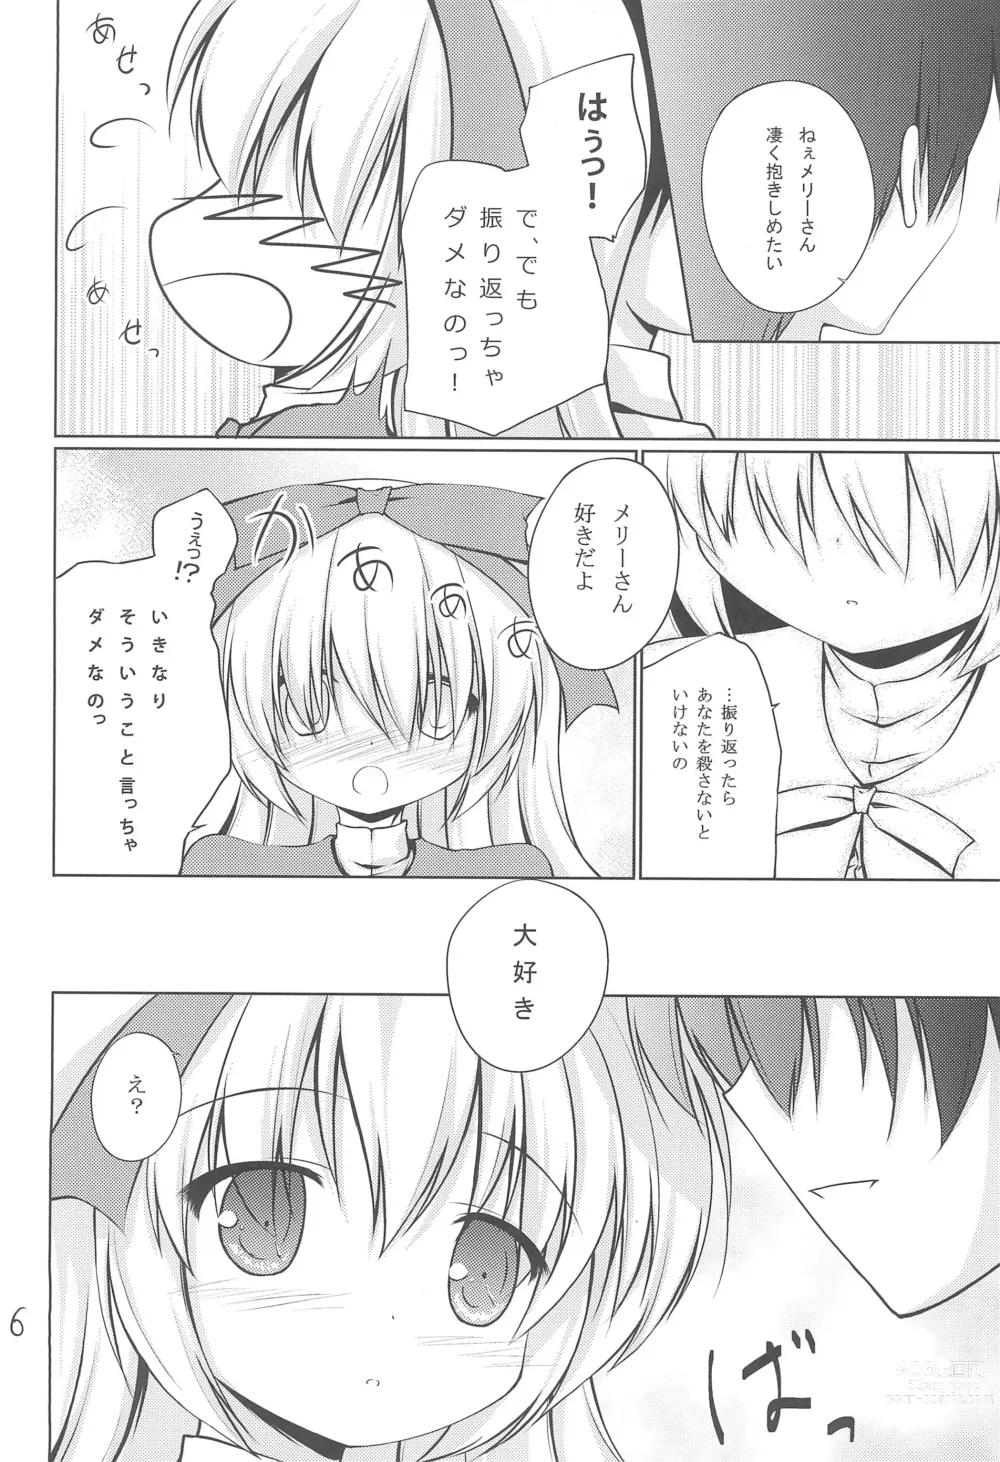 Page 6 of doujinshi Anata no Ushiro no Mary-san